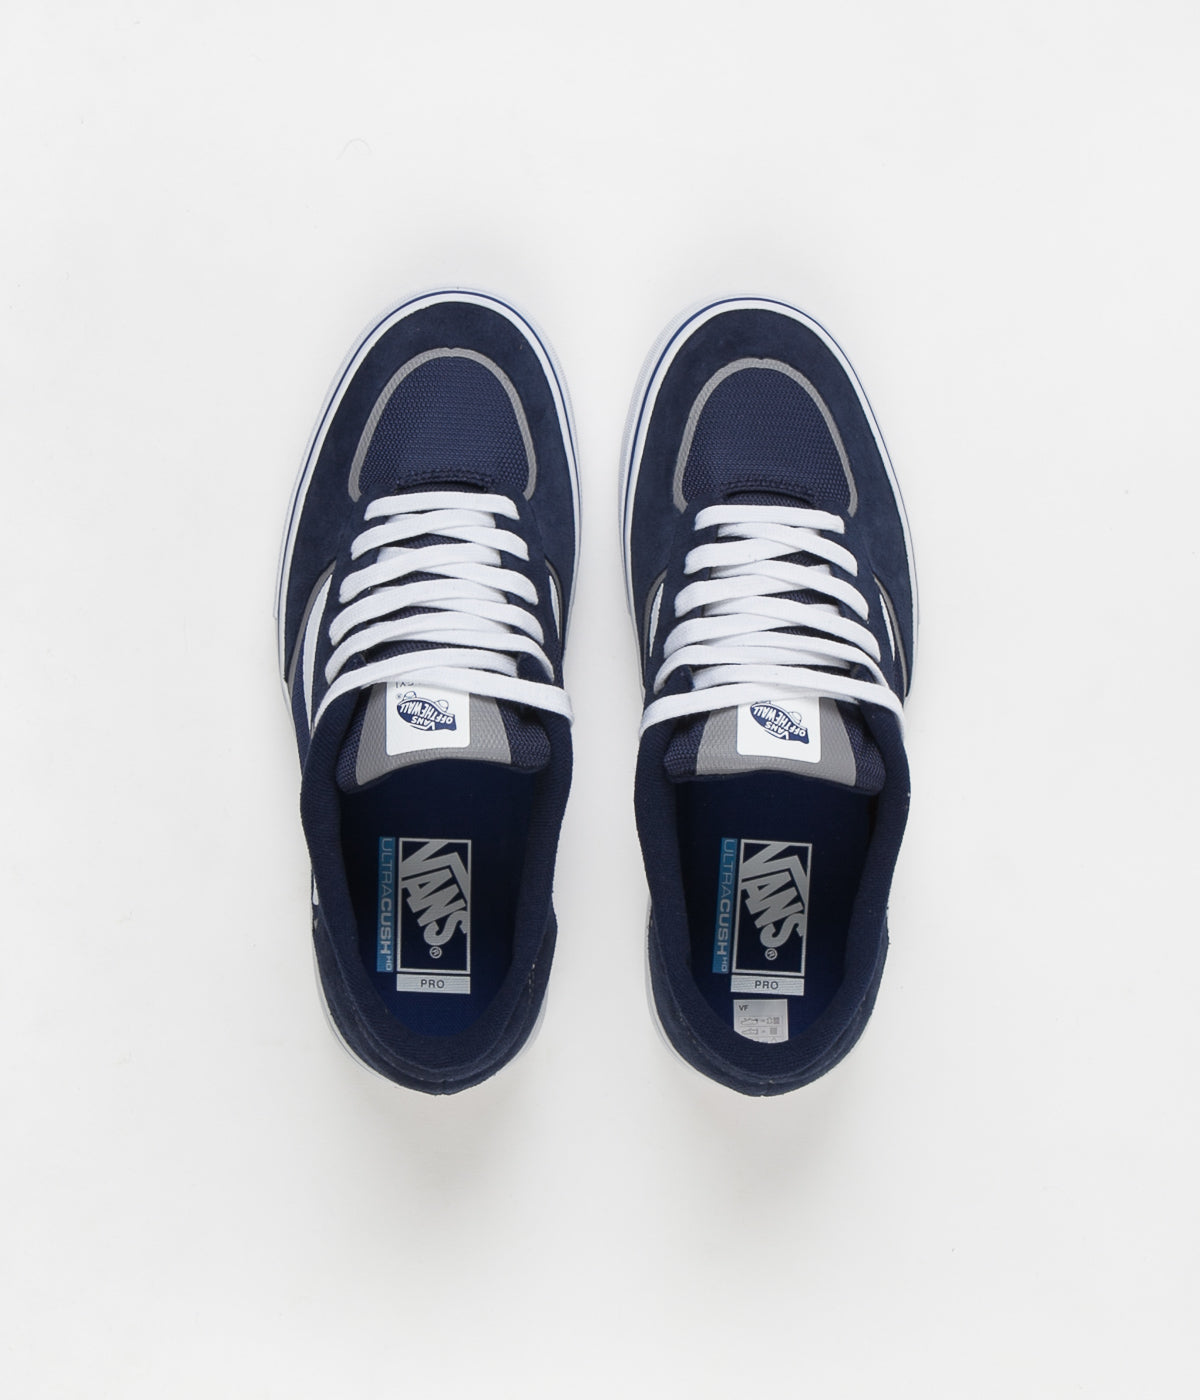 Vans Rowley Rapidweld Pro Shoes - Navy / White | Flatspot